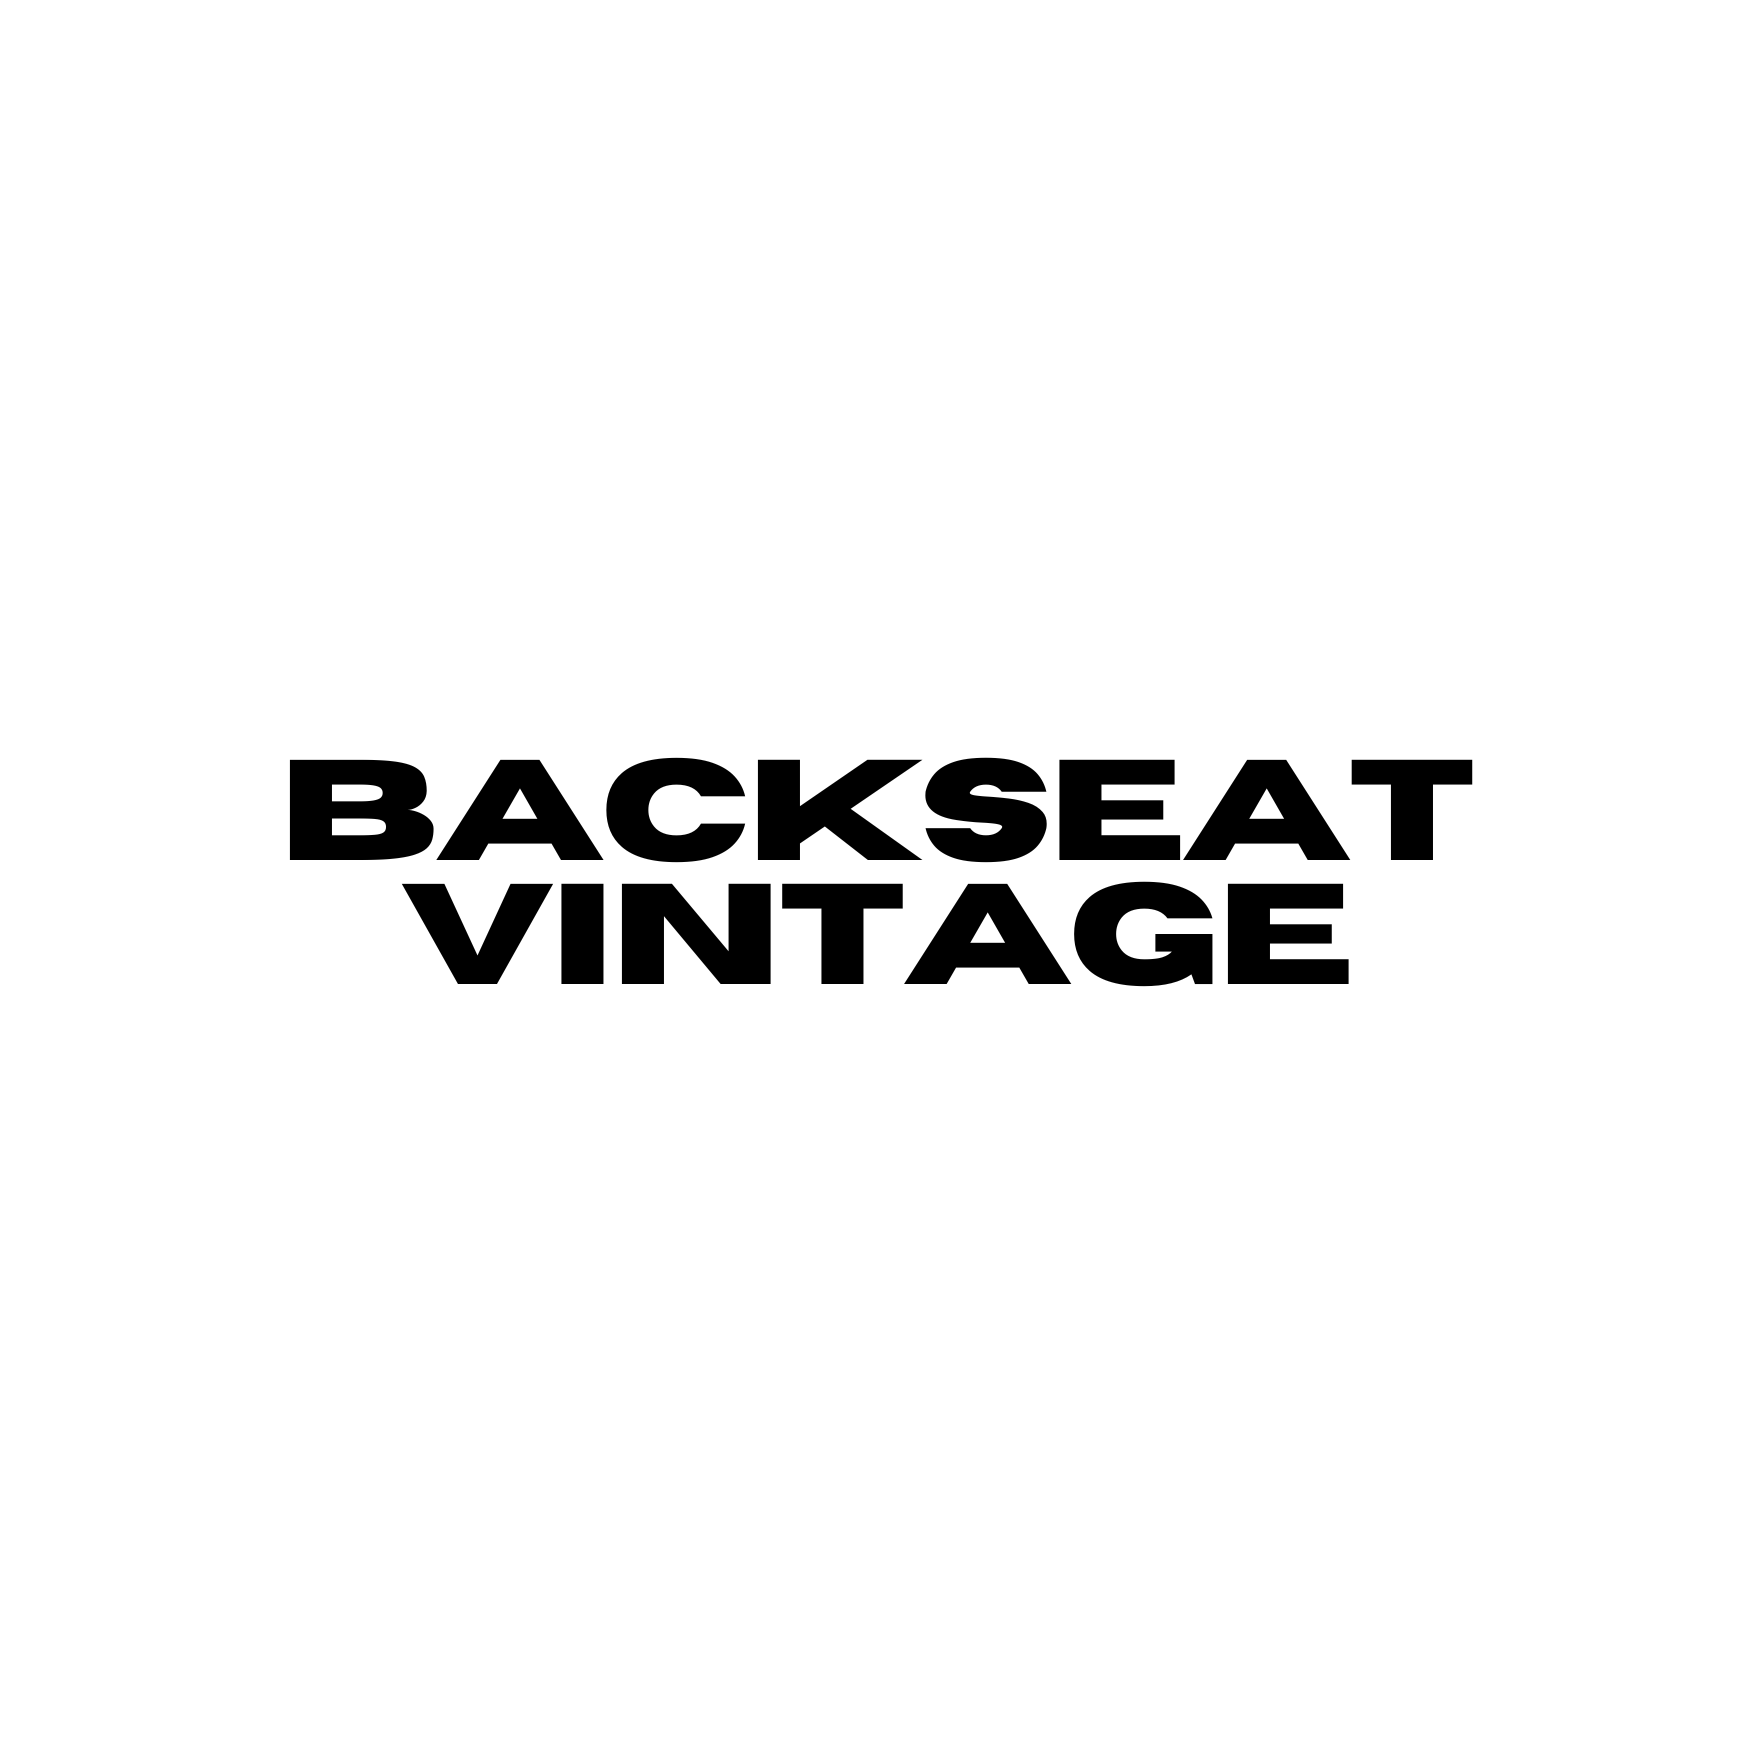 backseat vintage (1) (1).png